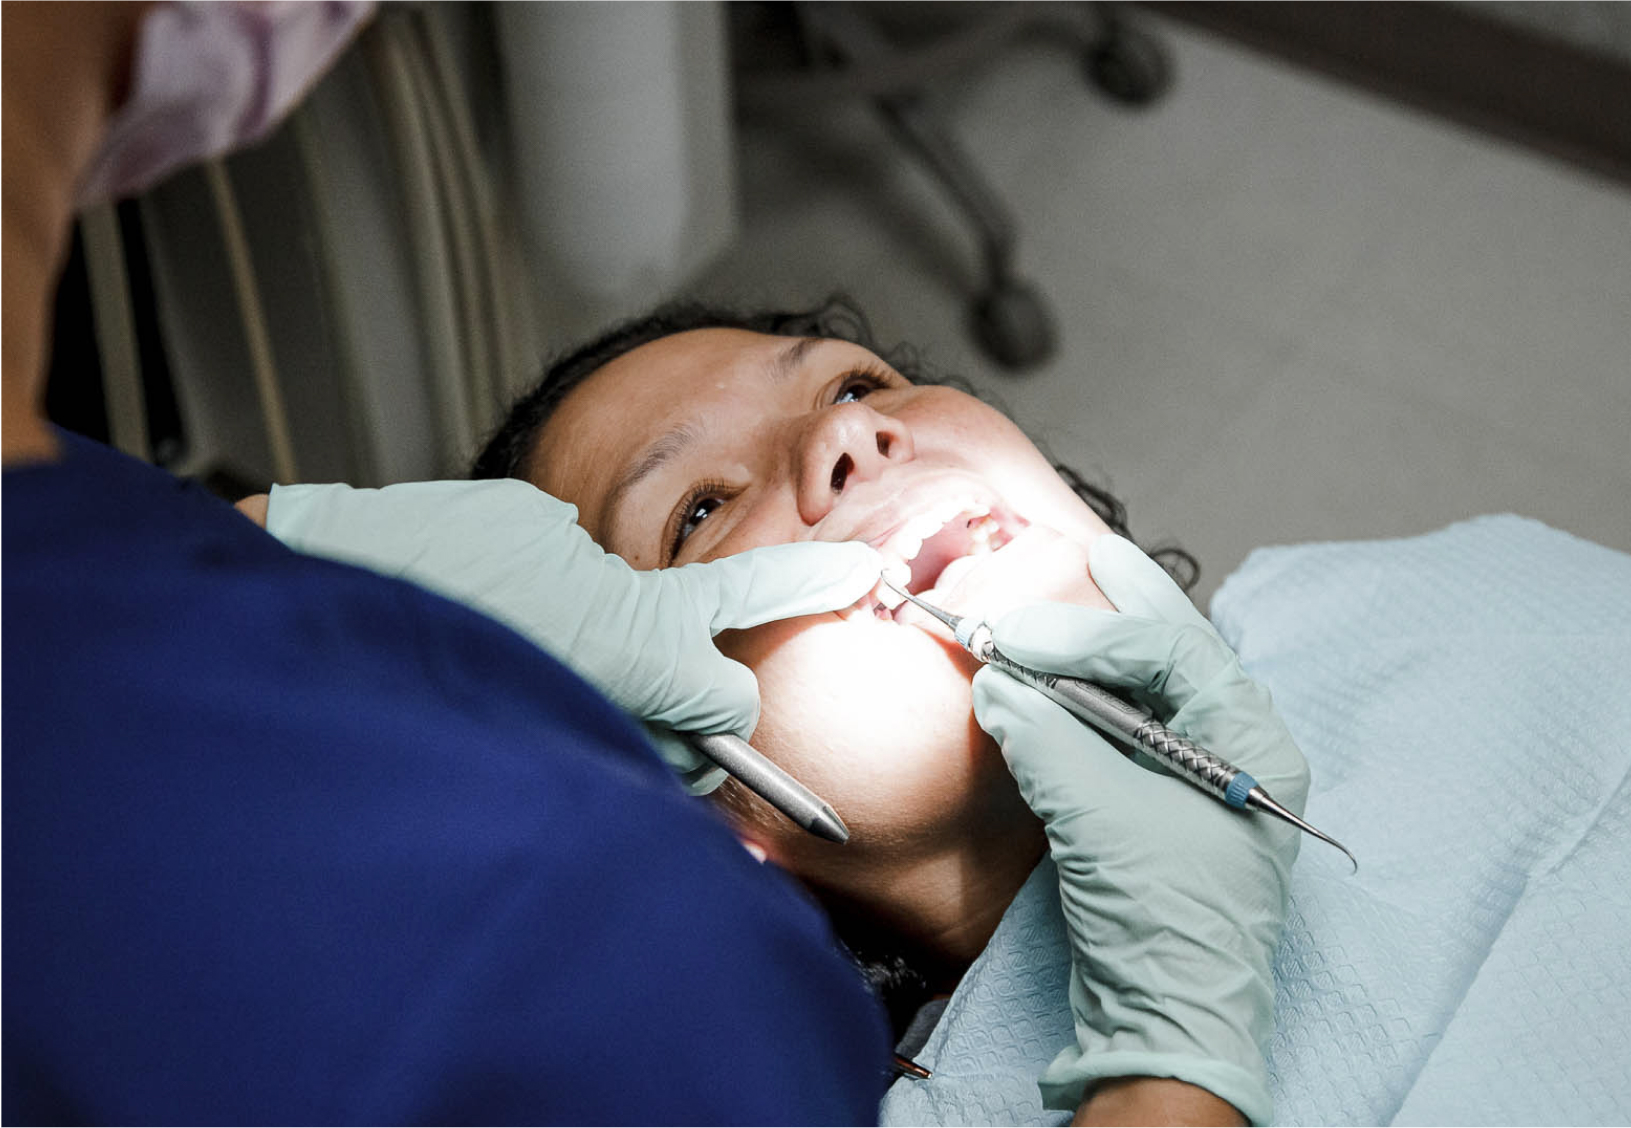 patient having their teeth cleaned